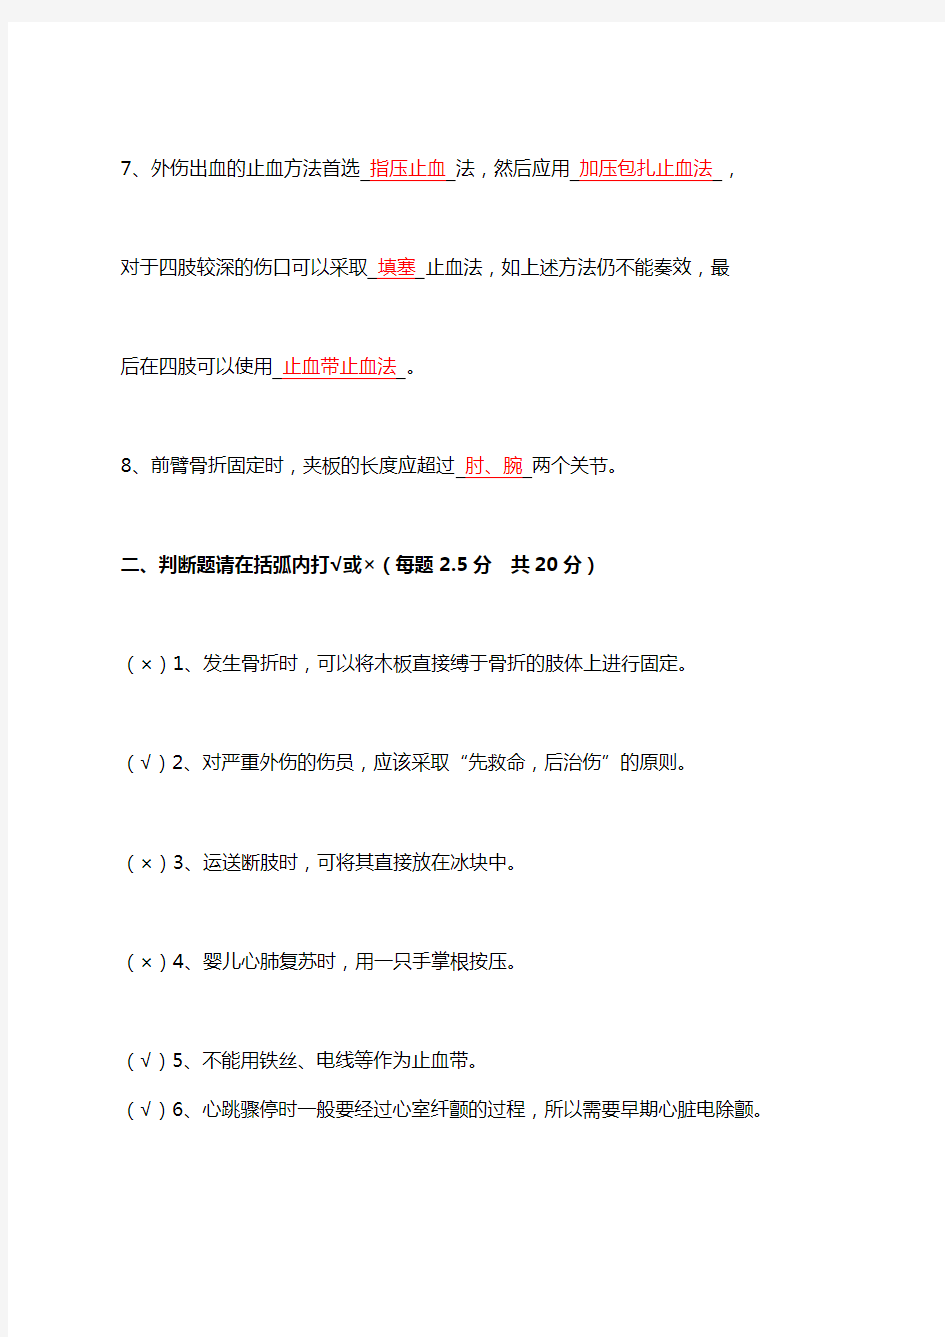 中国红十字会救护员培训理论考试示范卷试答案名师优质资料